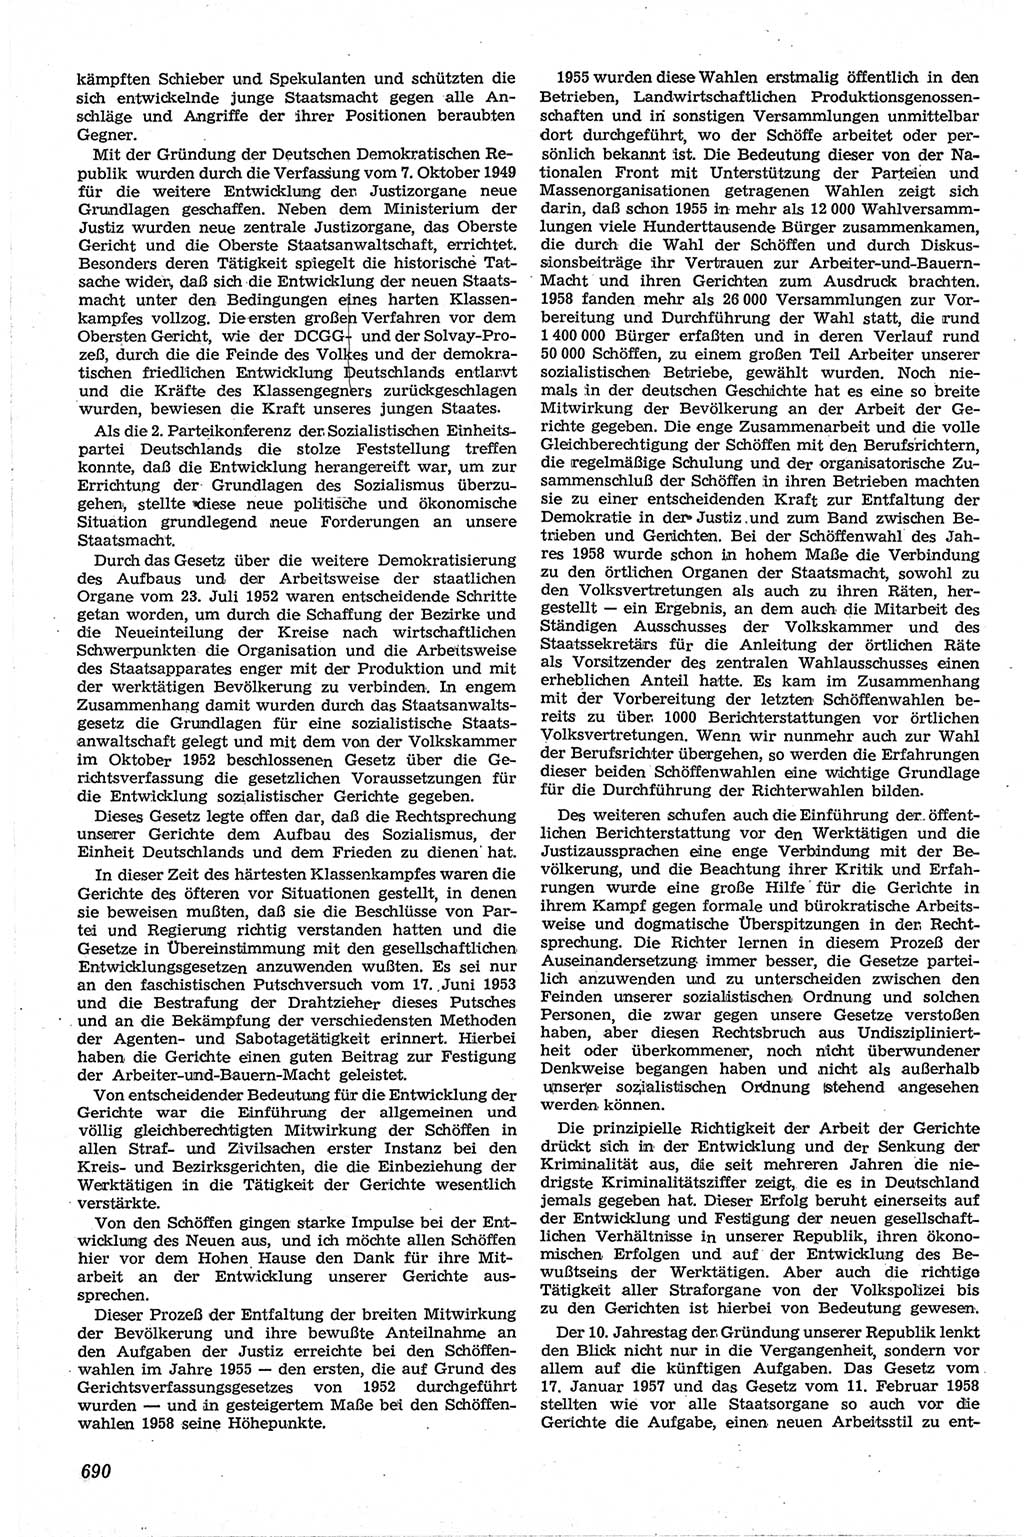 Neue Justiz (NJ), Zeitschrift für Recht und Rechtswissenschaft [Deutsche Demokratische Republik (DDR)], 13. Jahrgang 1959, Seite 690 (NJ DDR 1959, S. 690)